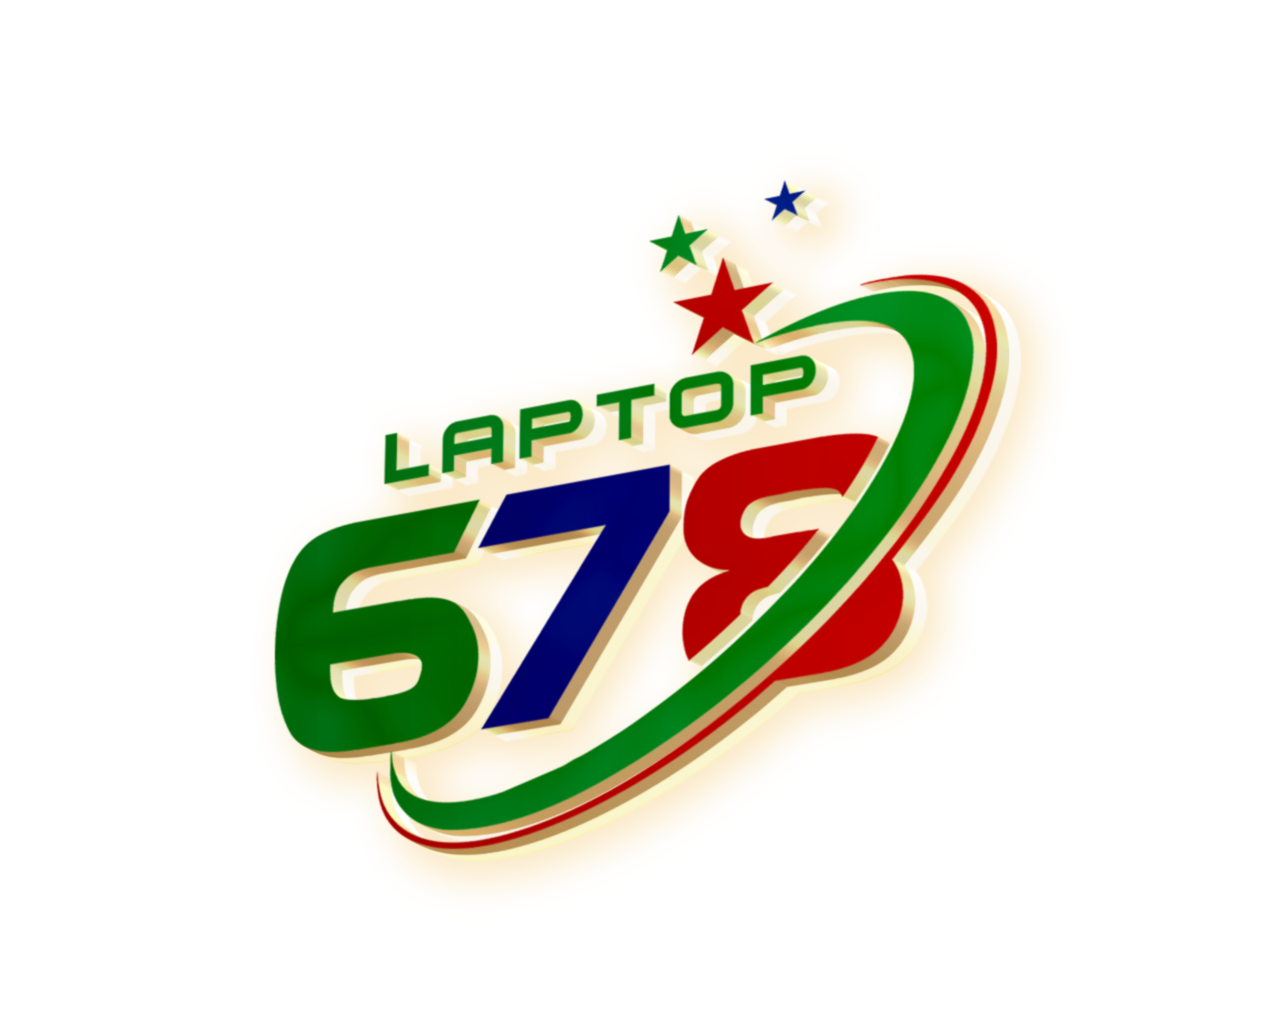 giới thiệu laptop678 - Laptop678